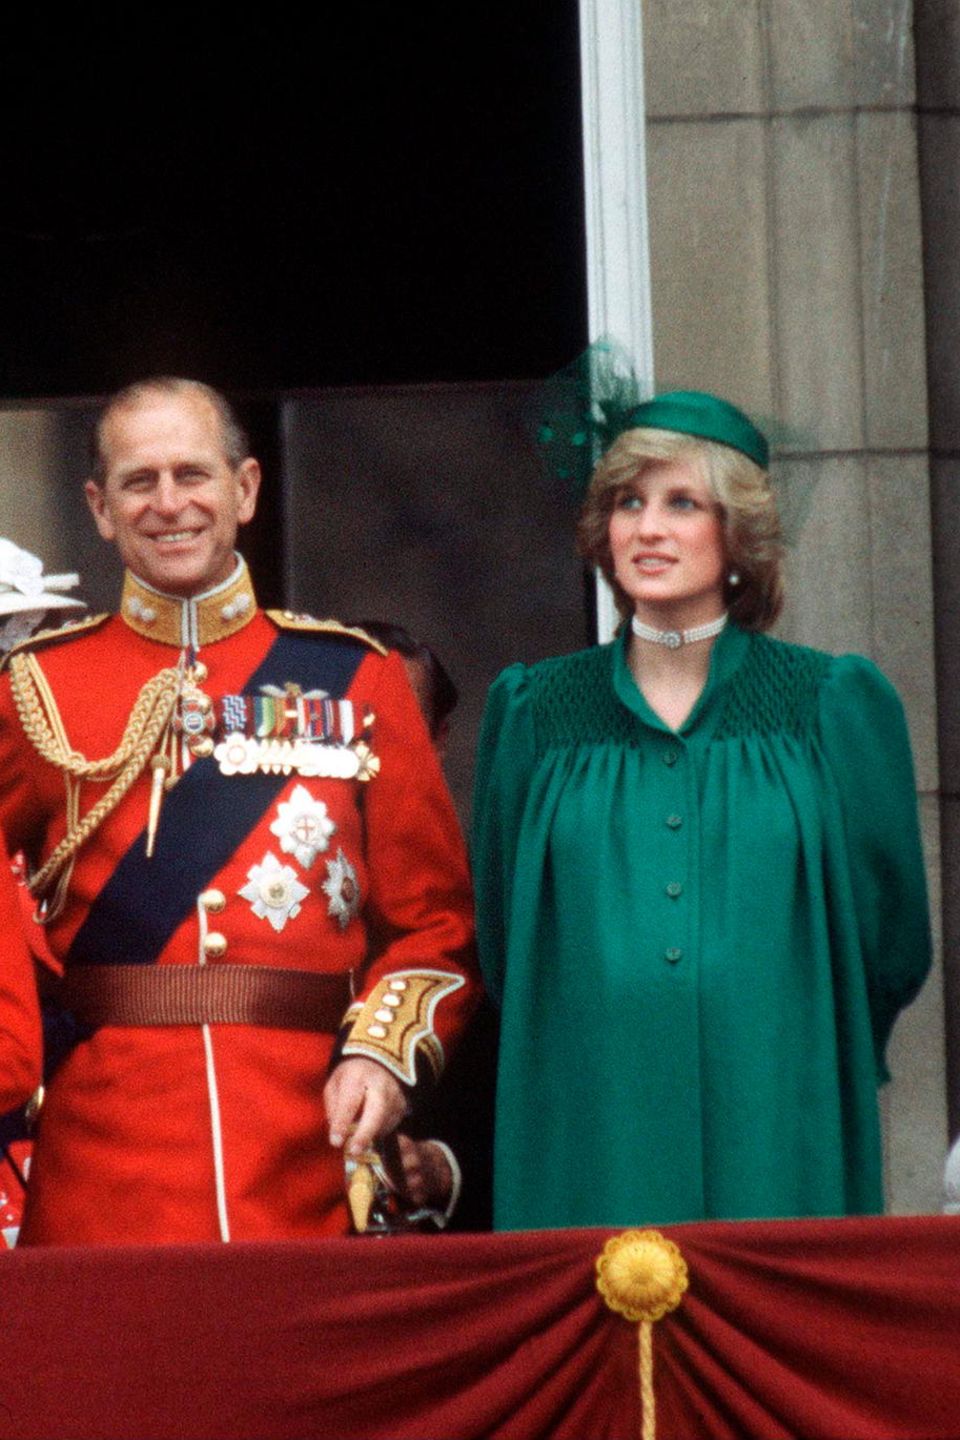 Während der "Trooping the Colour"-Zeremonie im Jahr 1982 zeigte sich Prinzessin Diana mit Babykugel und einem durchaus ähnlichem Look, insbesondere mit beinahe identischer Kopfbedeckung, wie wir ihn bei Meghan während ihres letzten offiziellen Auftritts gesehen haben. 